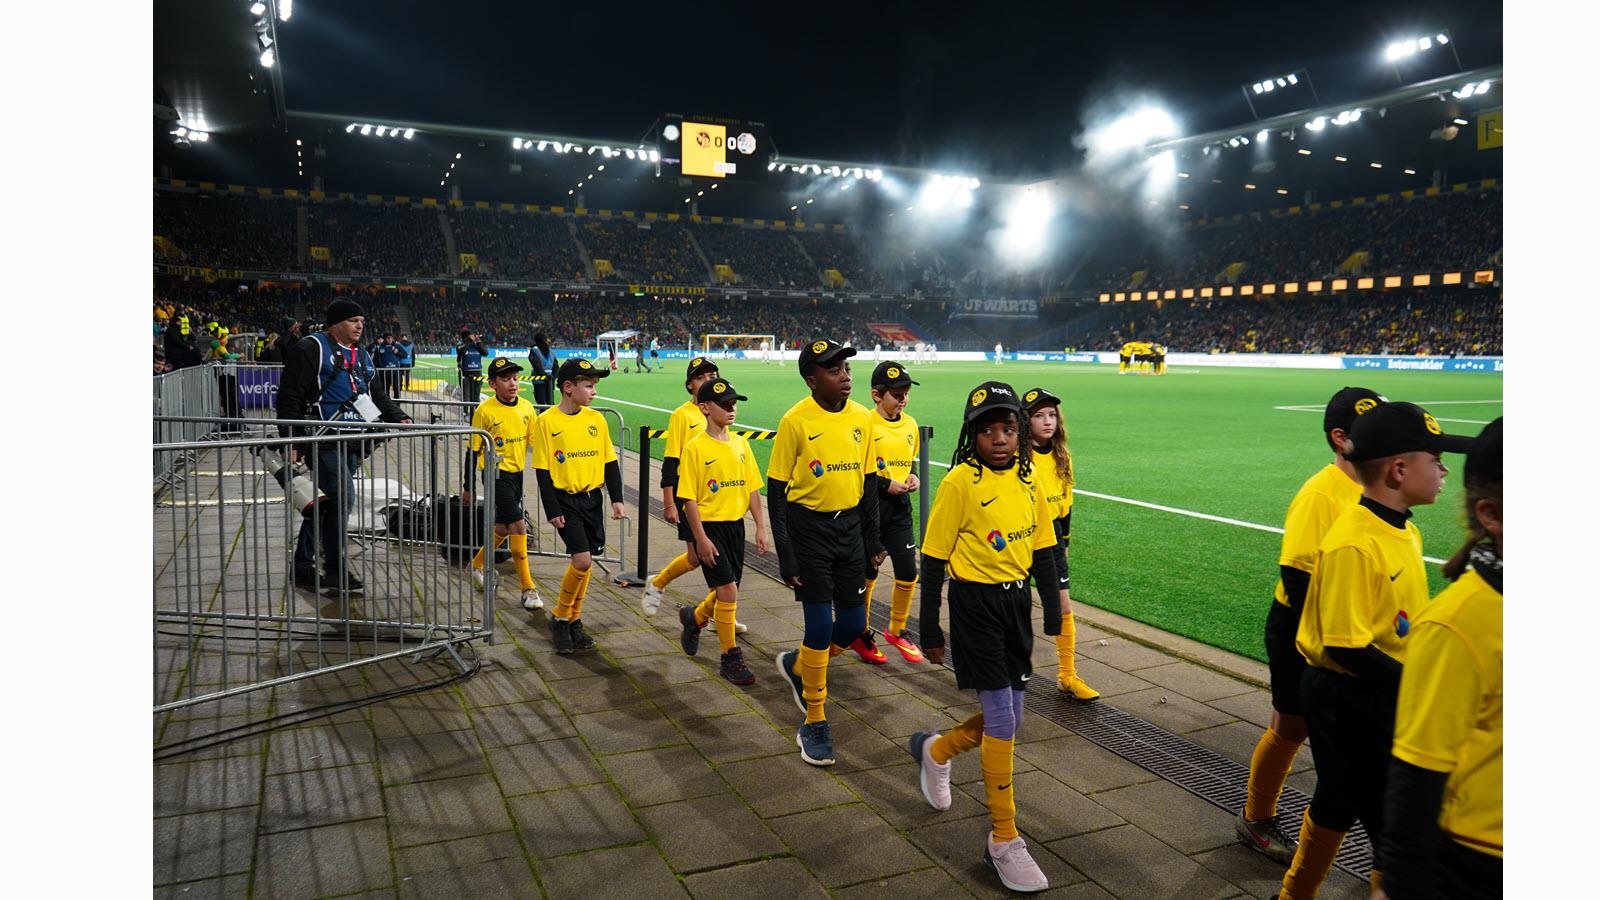 Children enter Wankdorf Stadium.